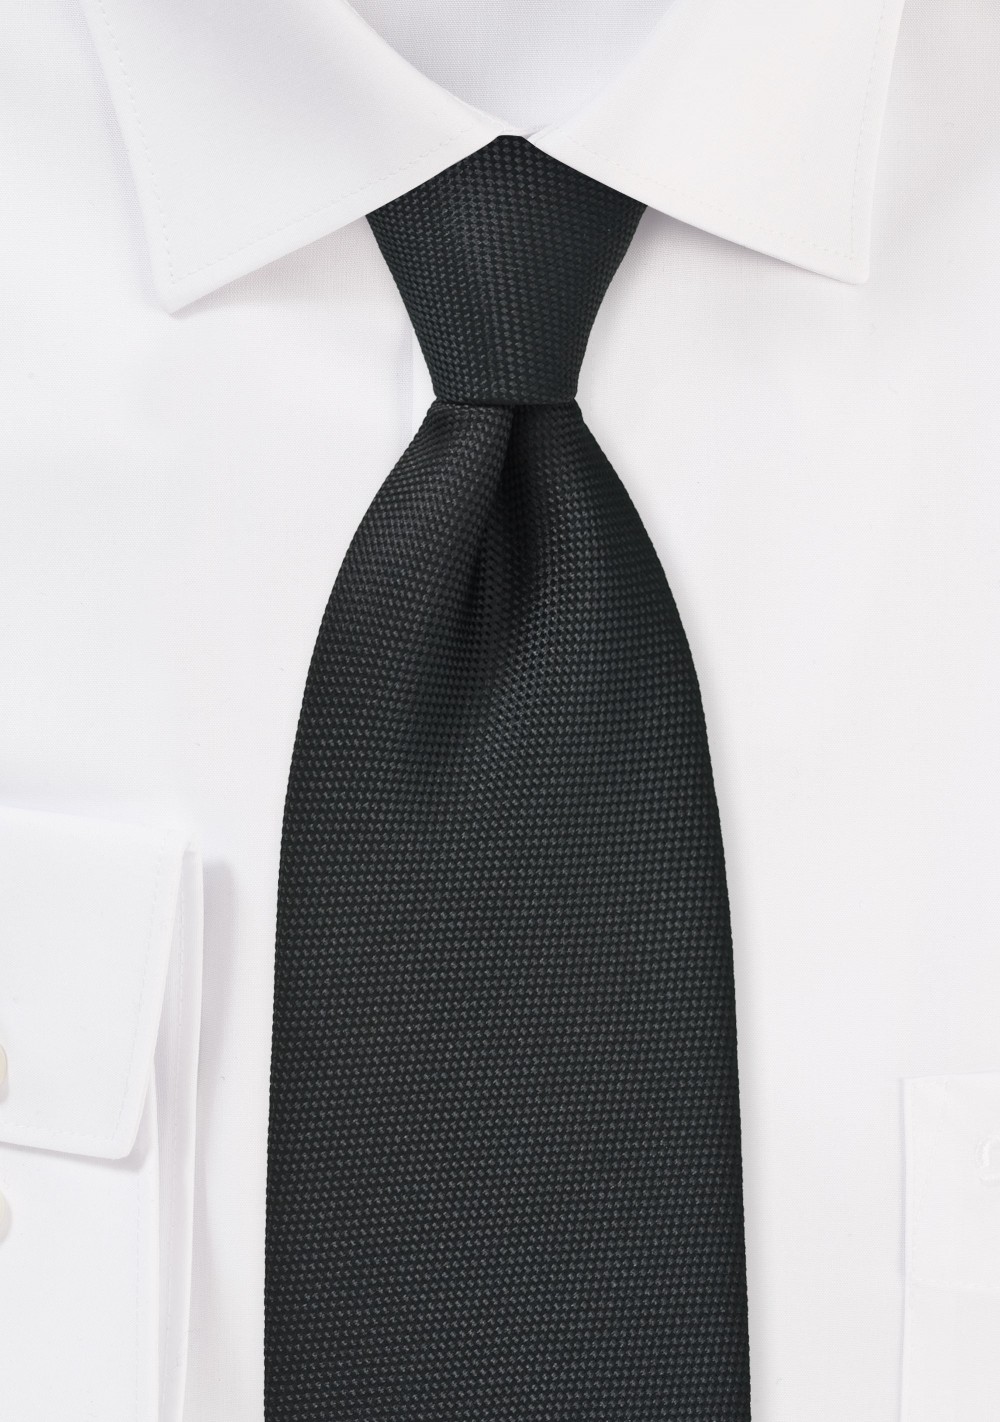 Matte Pique Textured Necktie